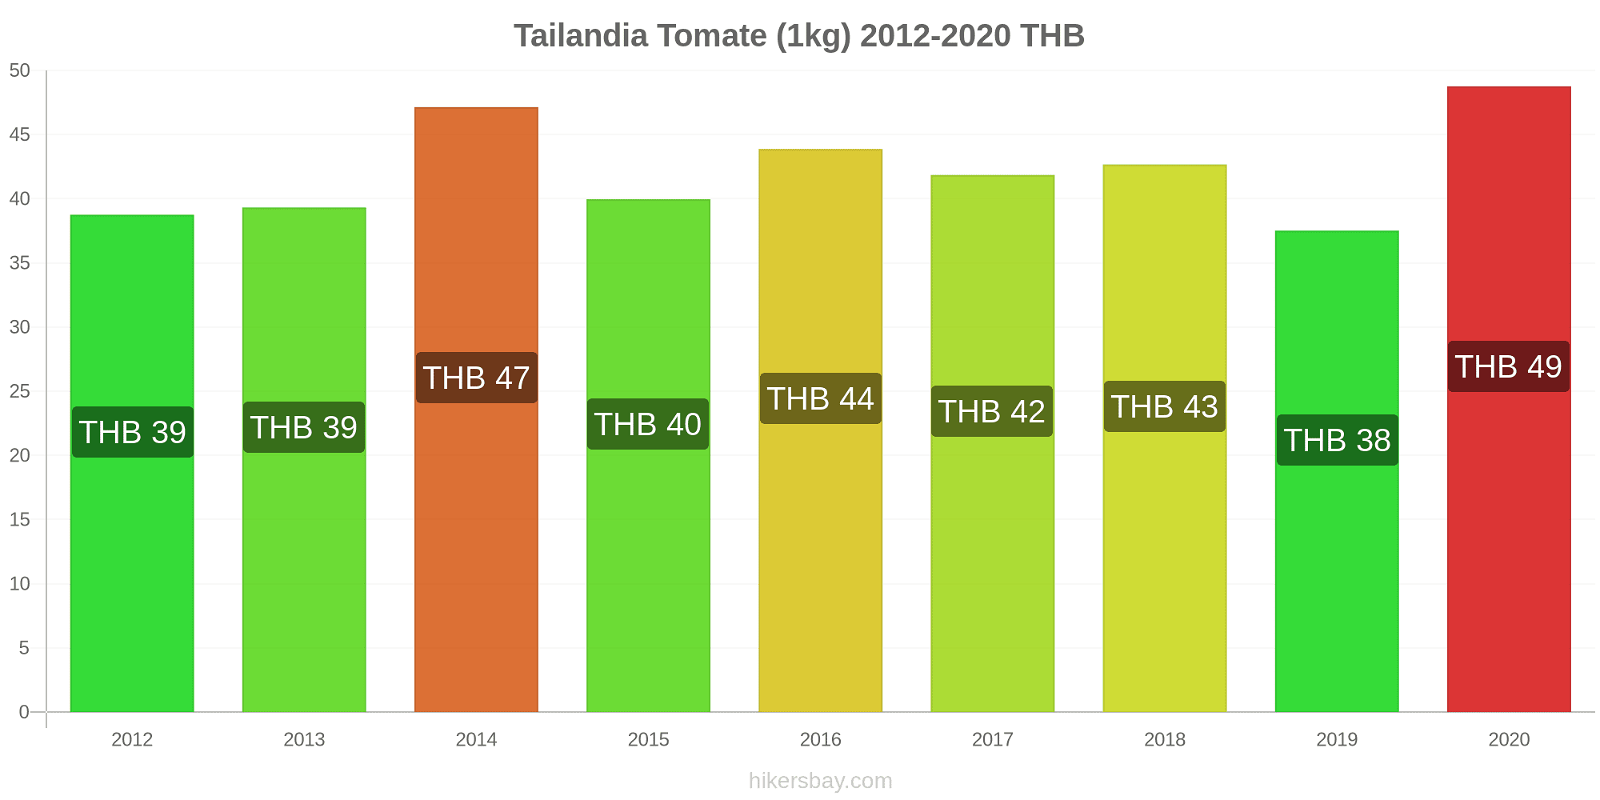 Tailandia cambios de precios Tomate (1kg) hikersbay.com